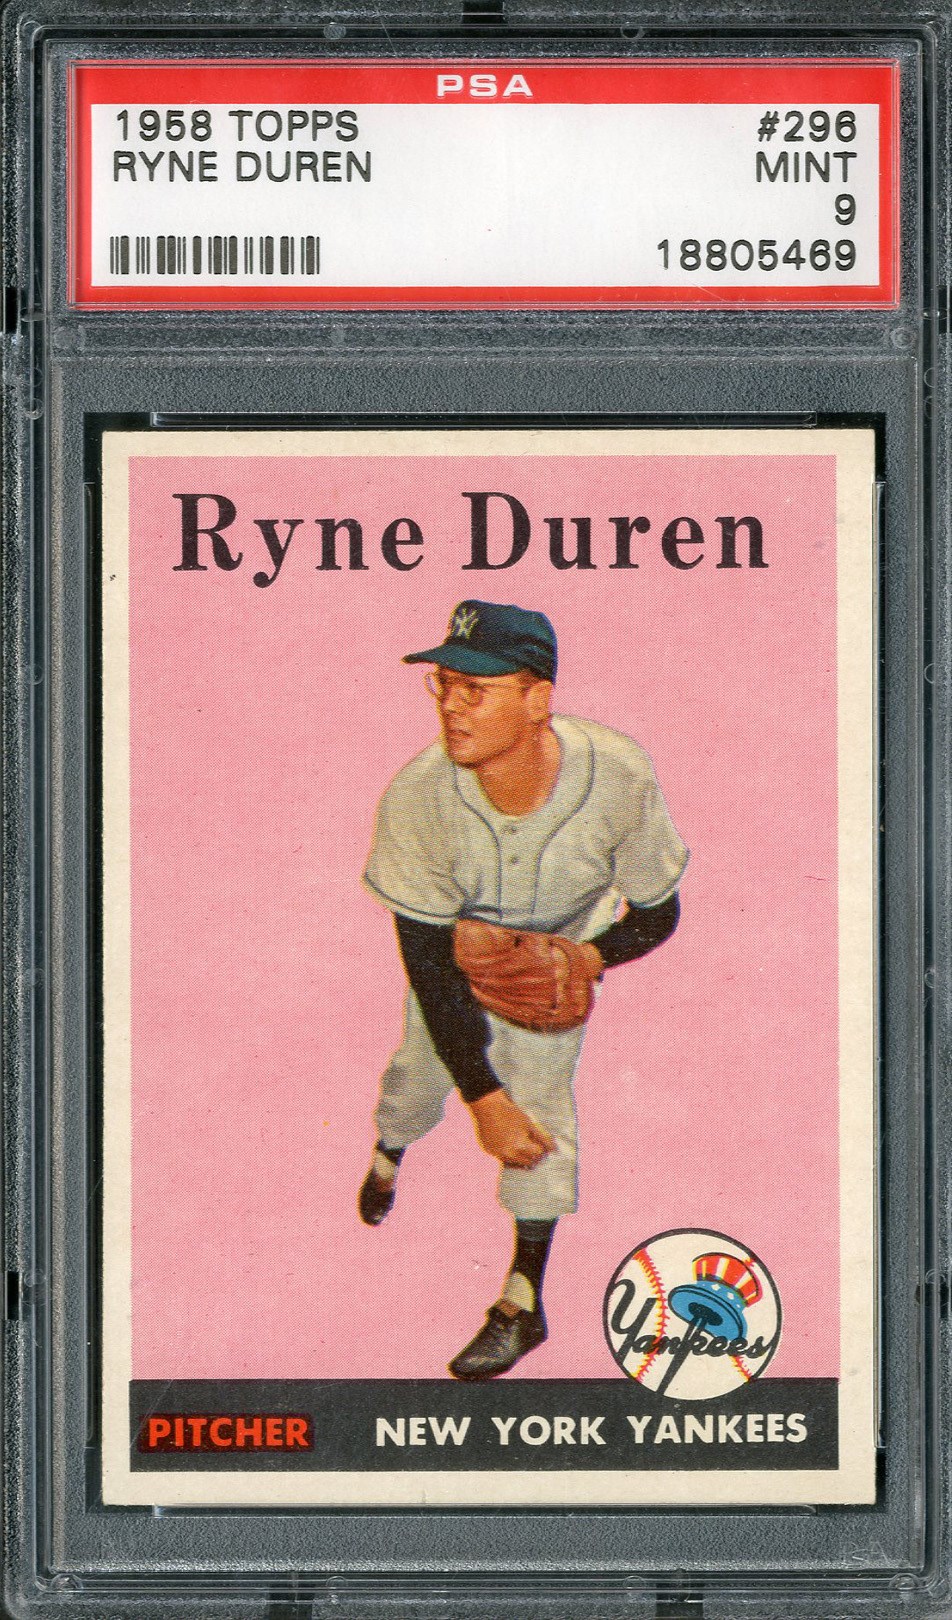 - 1958 Topps #296 Ryne Duren PSA MINT 9